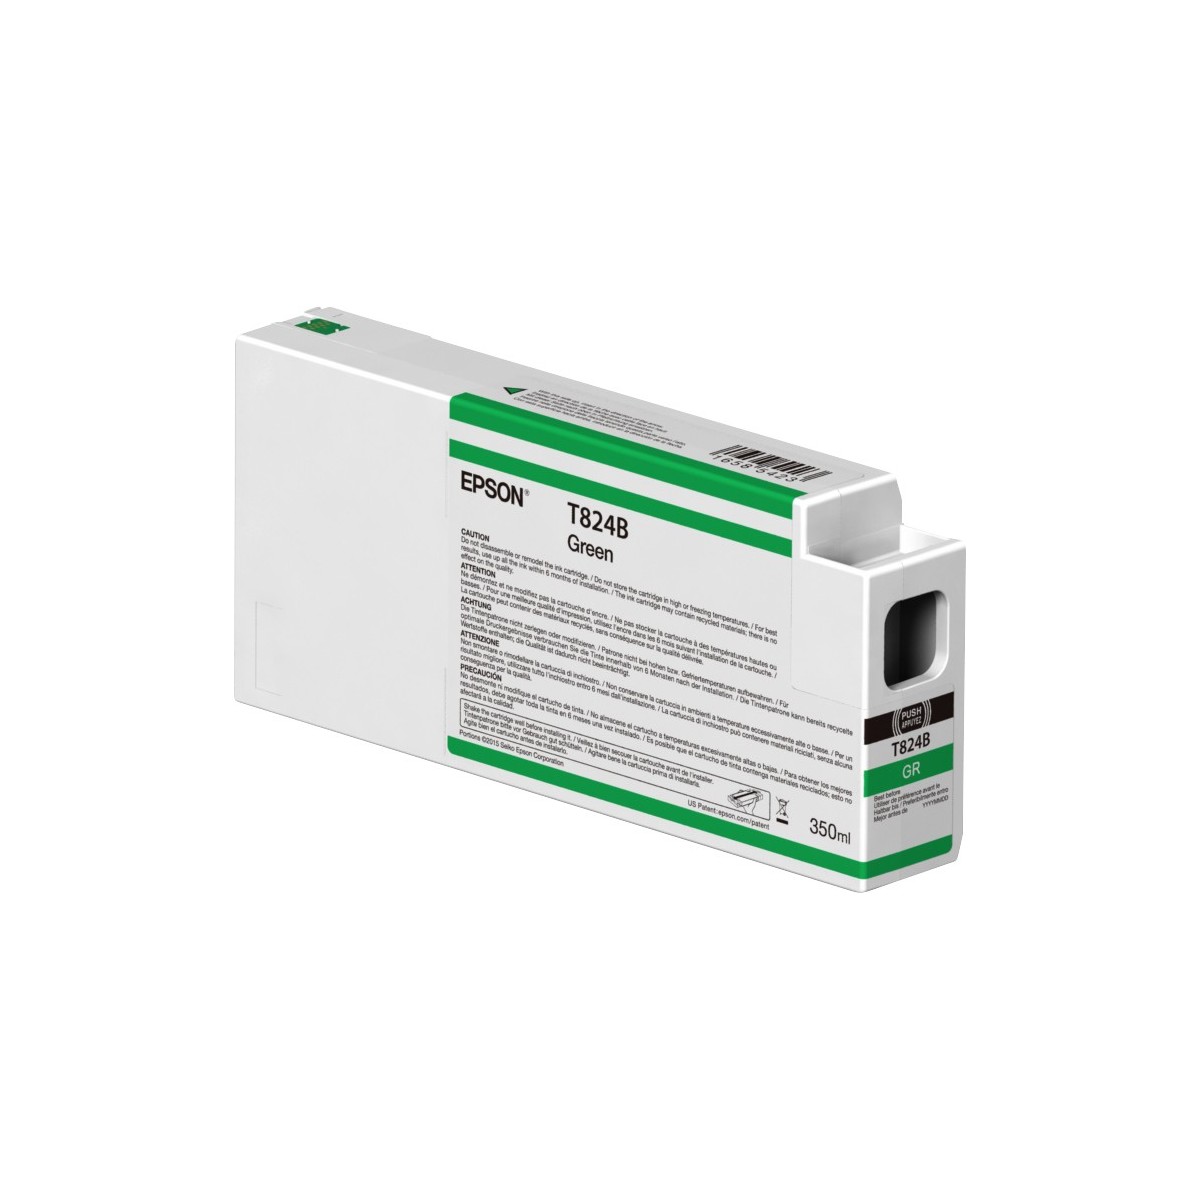 Epson Singlepack Green T824B00 UltraChrome HDX 350ml - Pigment-based ink - 350 ml - 1 pc(s)